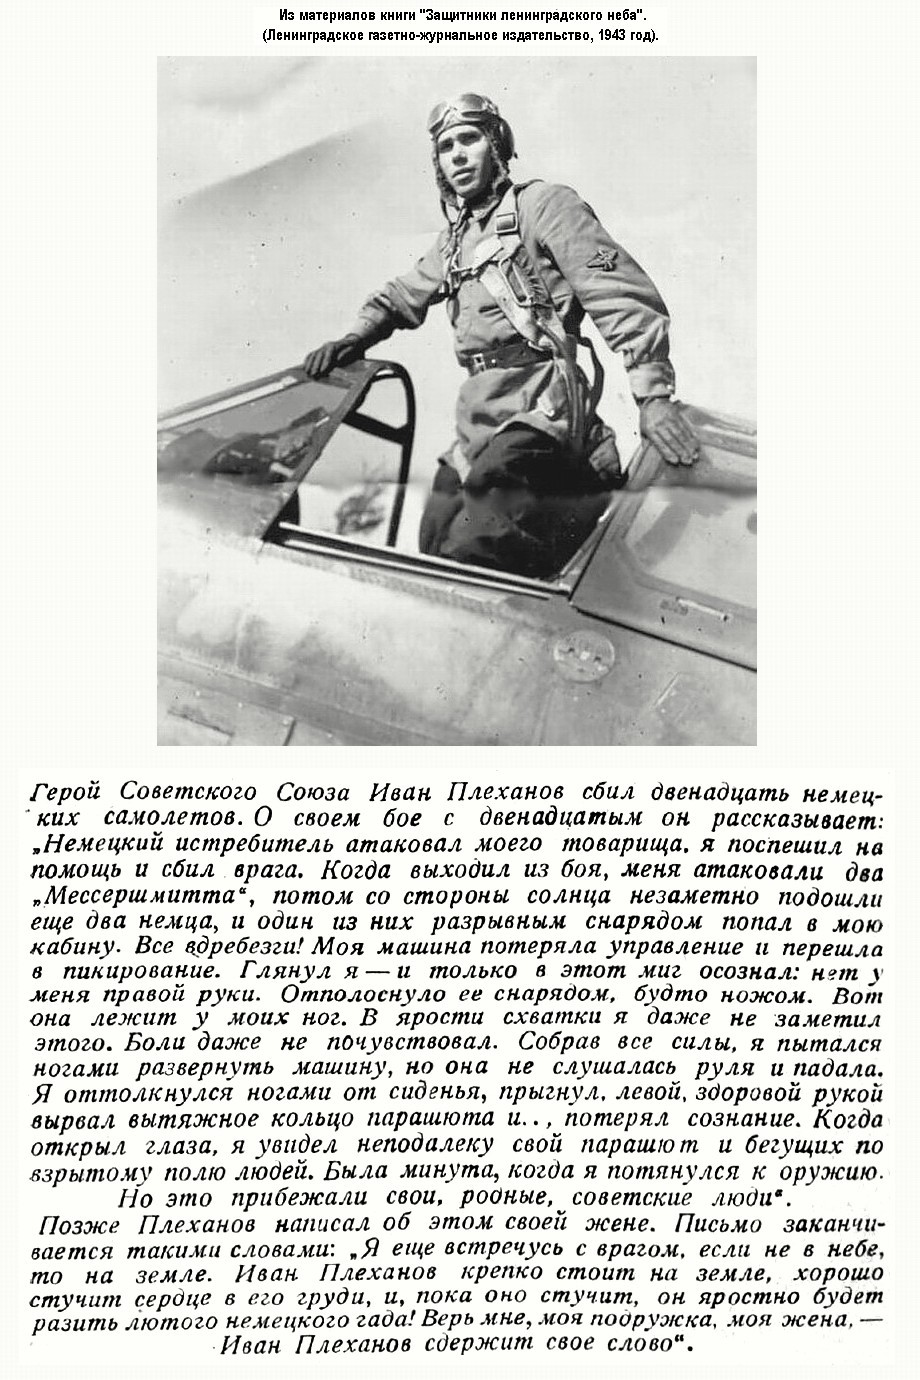 Из материалов прессы военных лет о И. Е. Плеханове